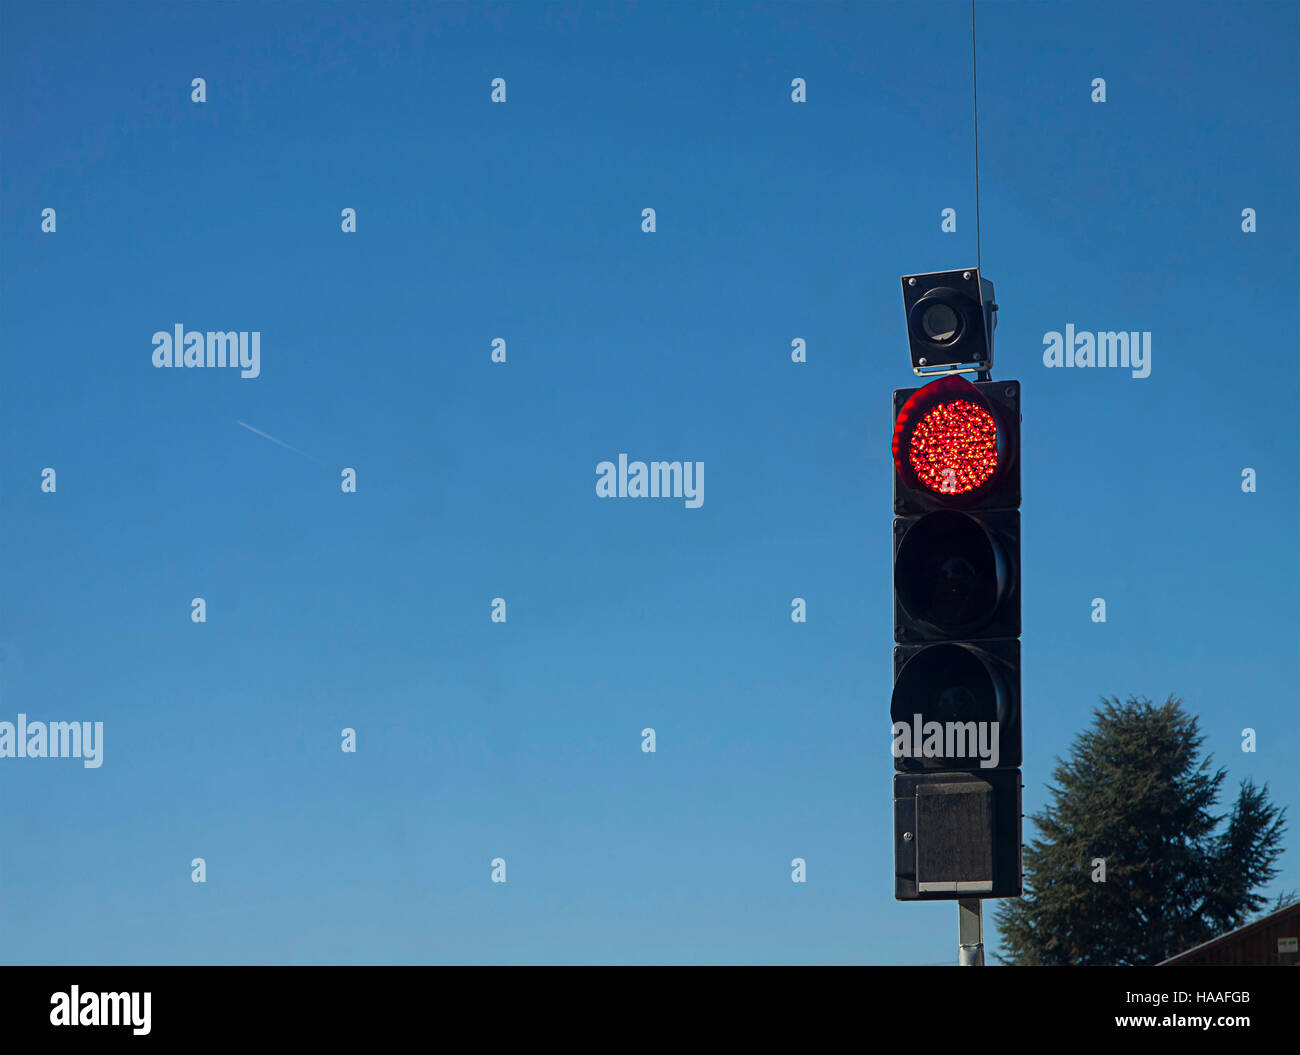 Semáforo con luz roja encendida para regular el tráfico en el cruce del camino, fondo de cielo azul Foto de stock